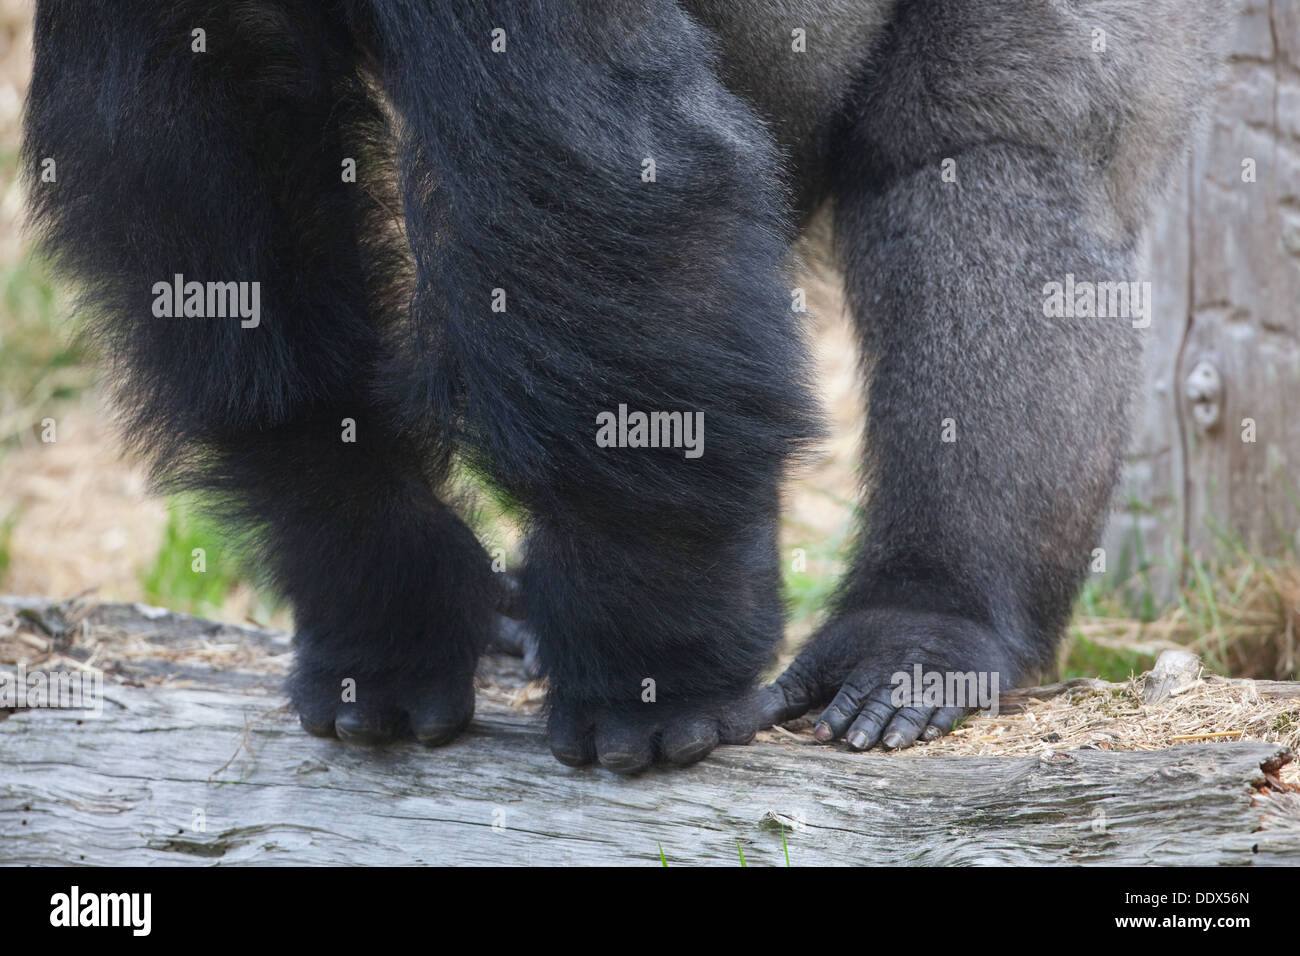 Flachlandgorilla (Gorilla Gorilla Gorilla). Männlich. Haltung. Finger, Arme, Beine, Zehen, vorderen Gliedmaßen und Hind Gliedmaßen. Stockfoto